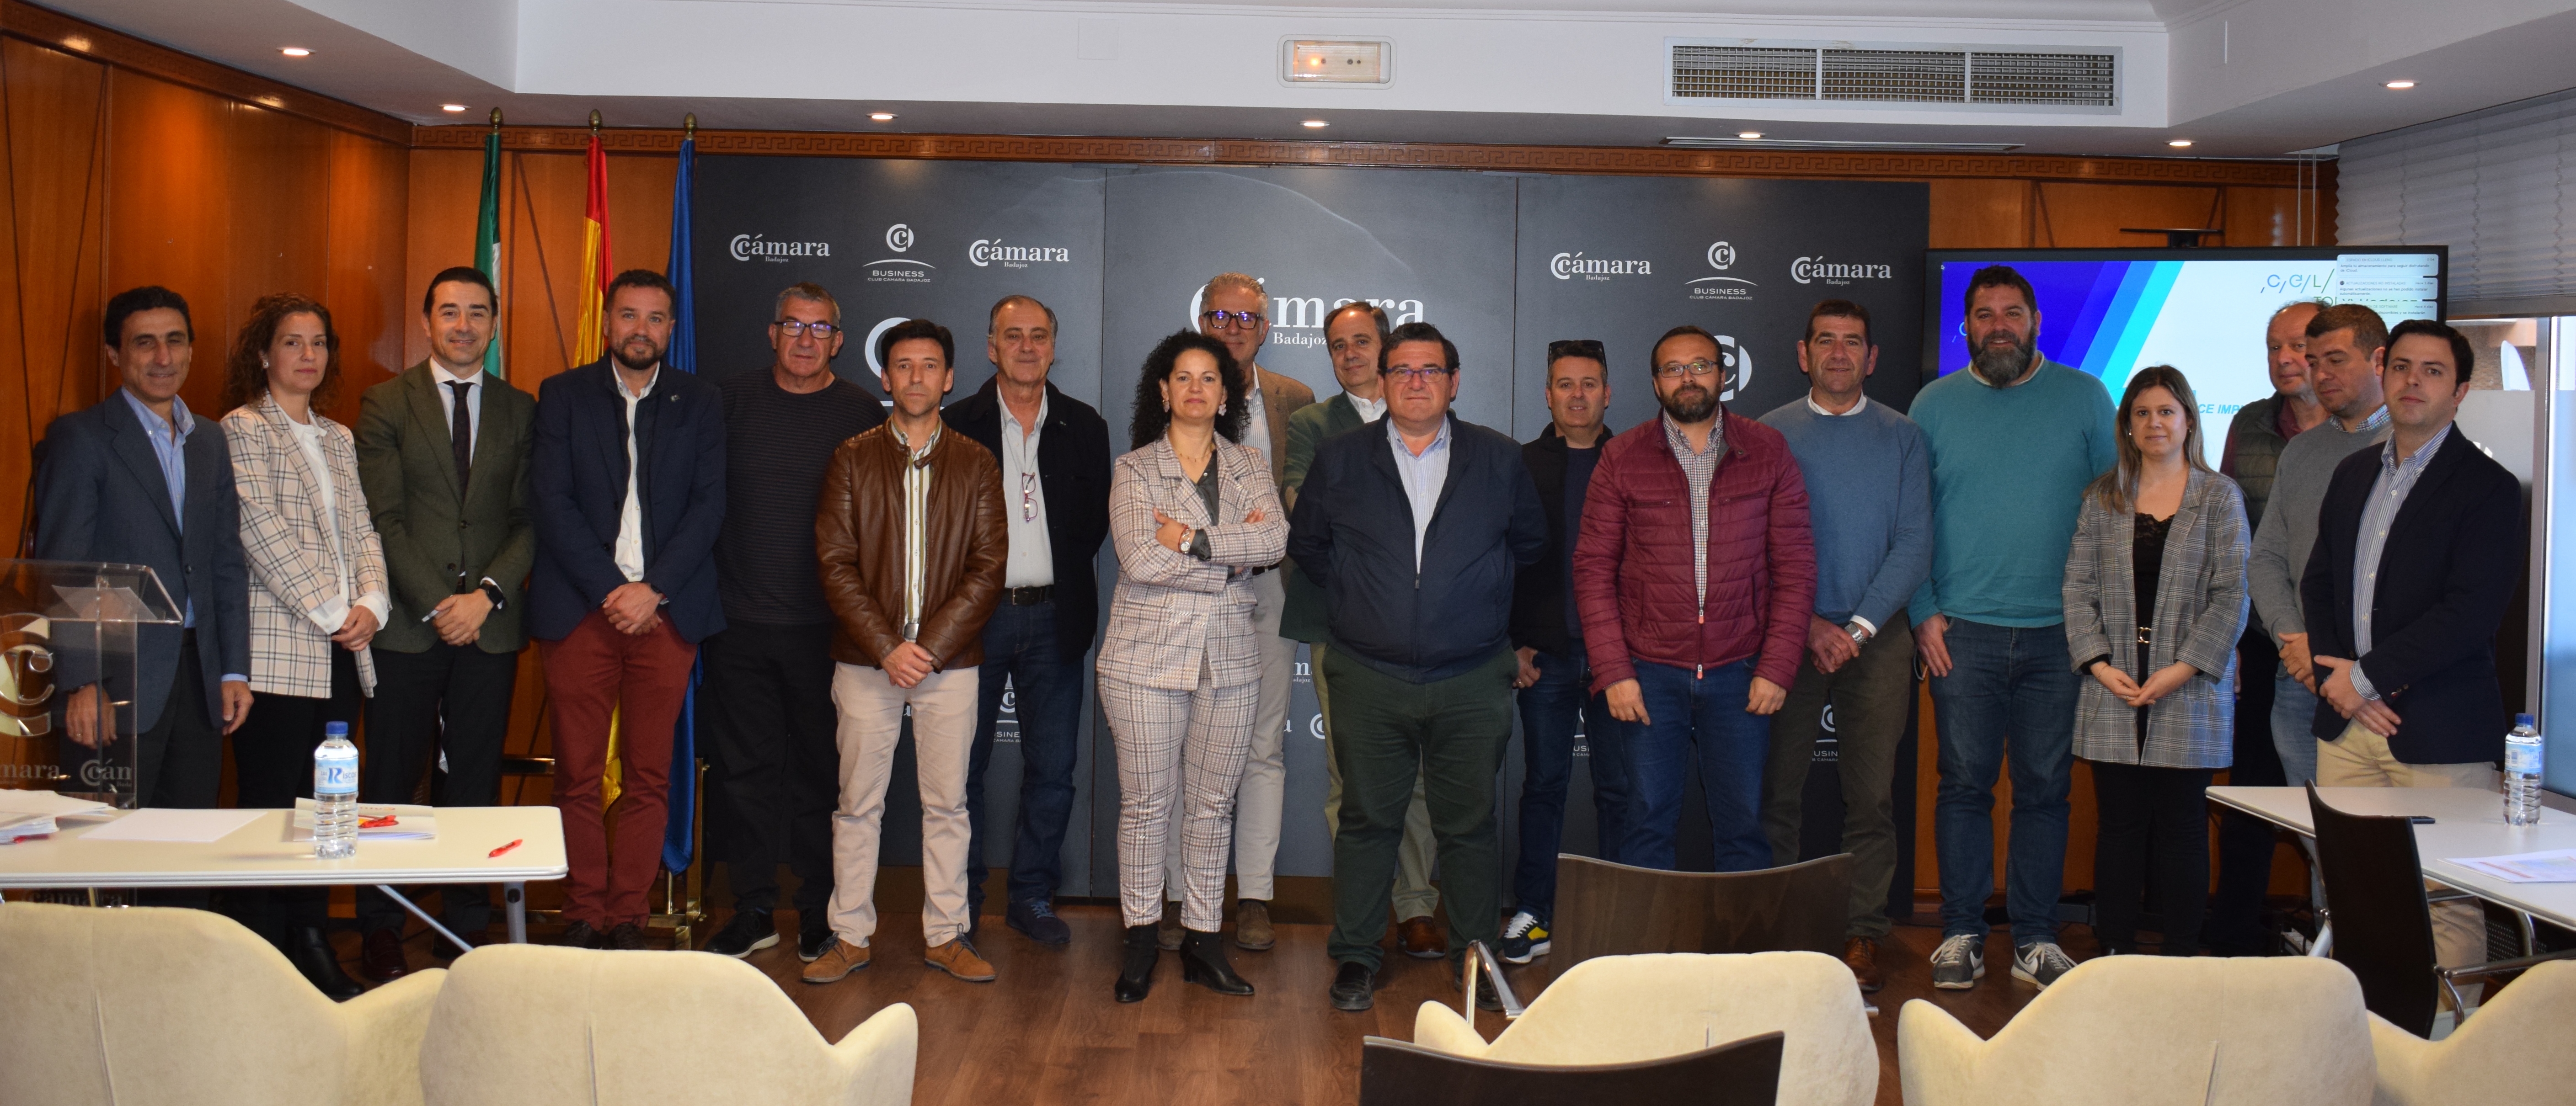 Cámara Badajoz y trece municipios de la provincia ponen en marcha un proyecto de Comunidad Energética Local